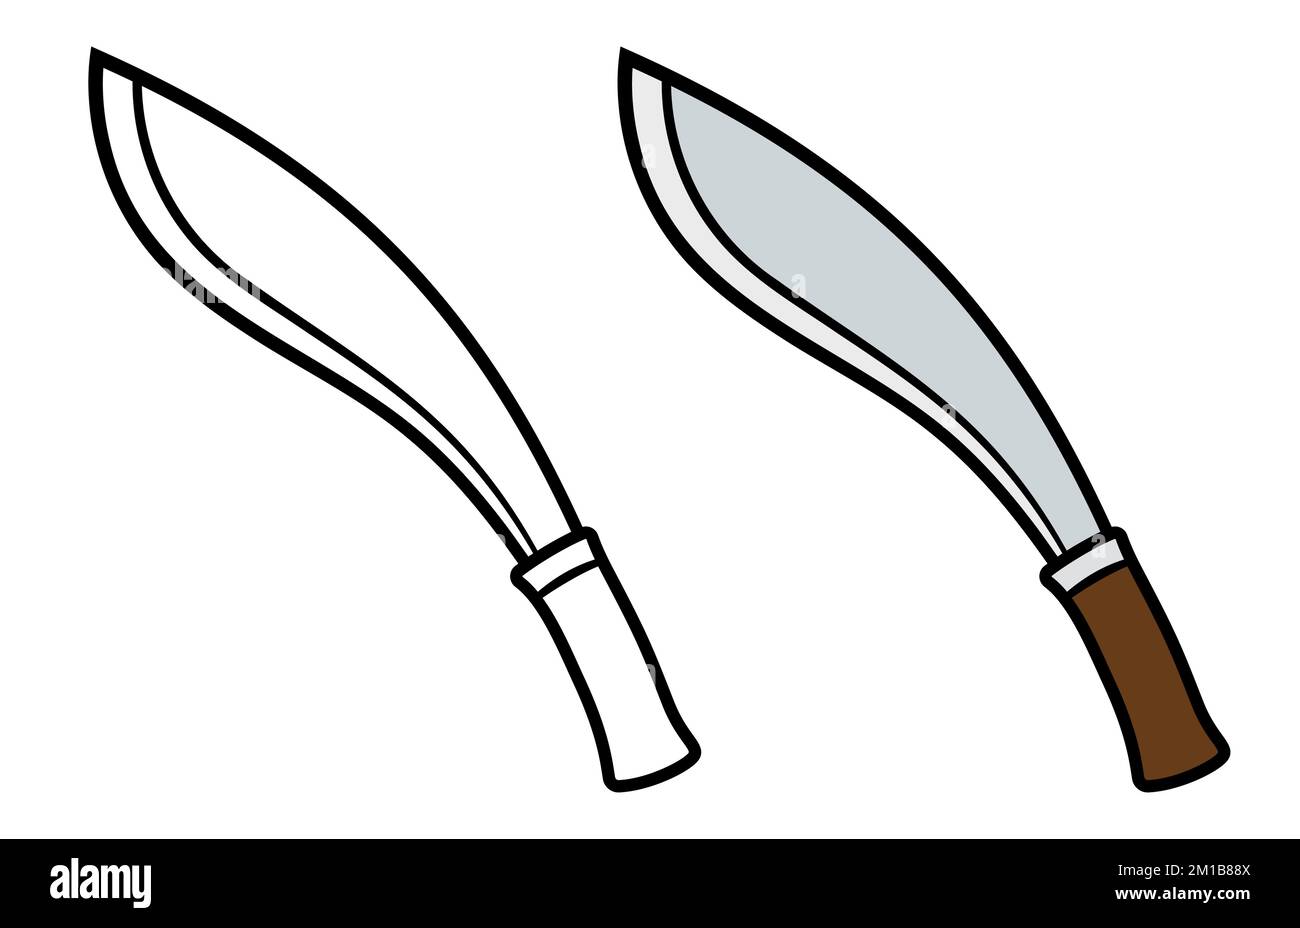 Coltello Kukri, tradizionale machete nepalese. Disegni a colori e disegni in bianco e nero. Illustrazione della clip vettoriale. Illustrazione Vettoriale